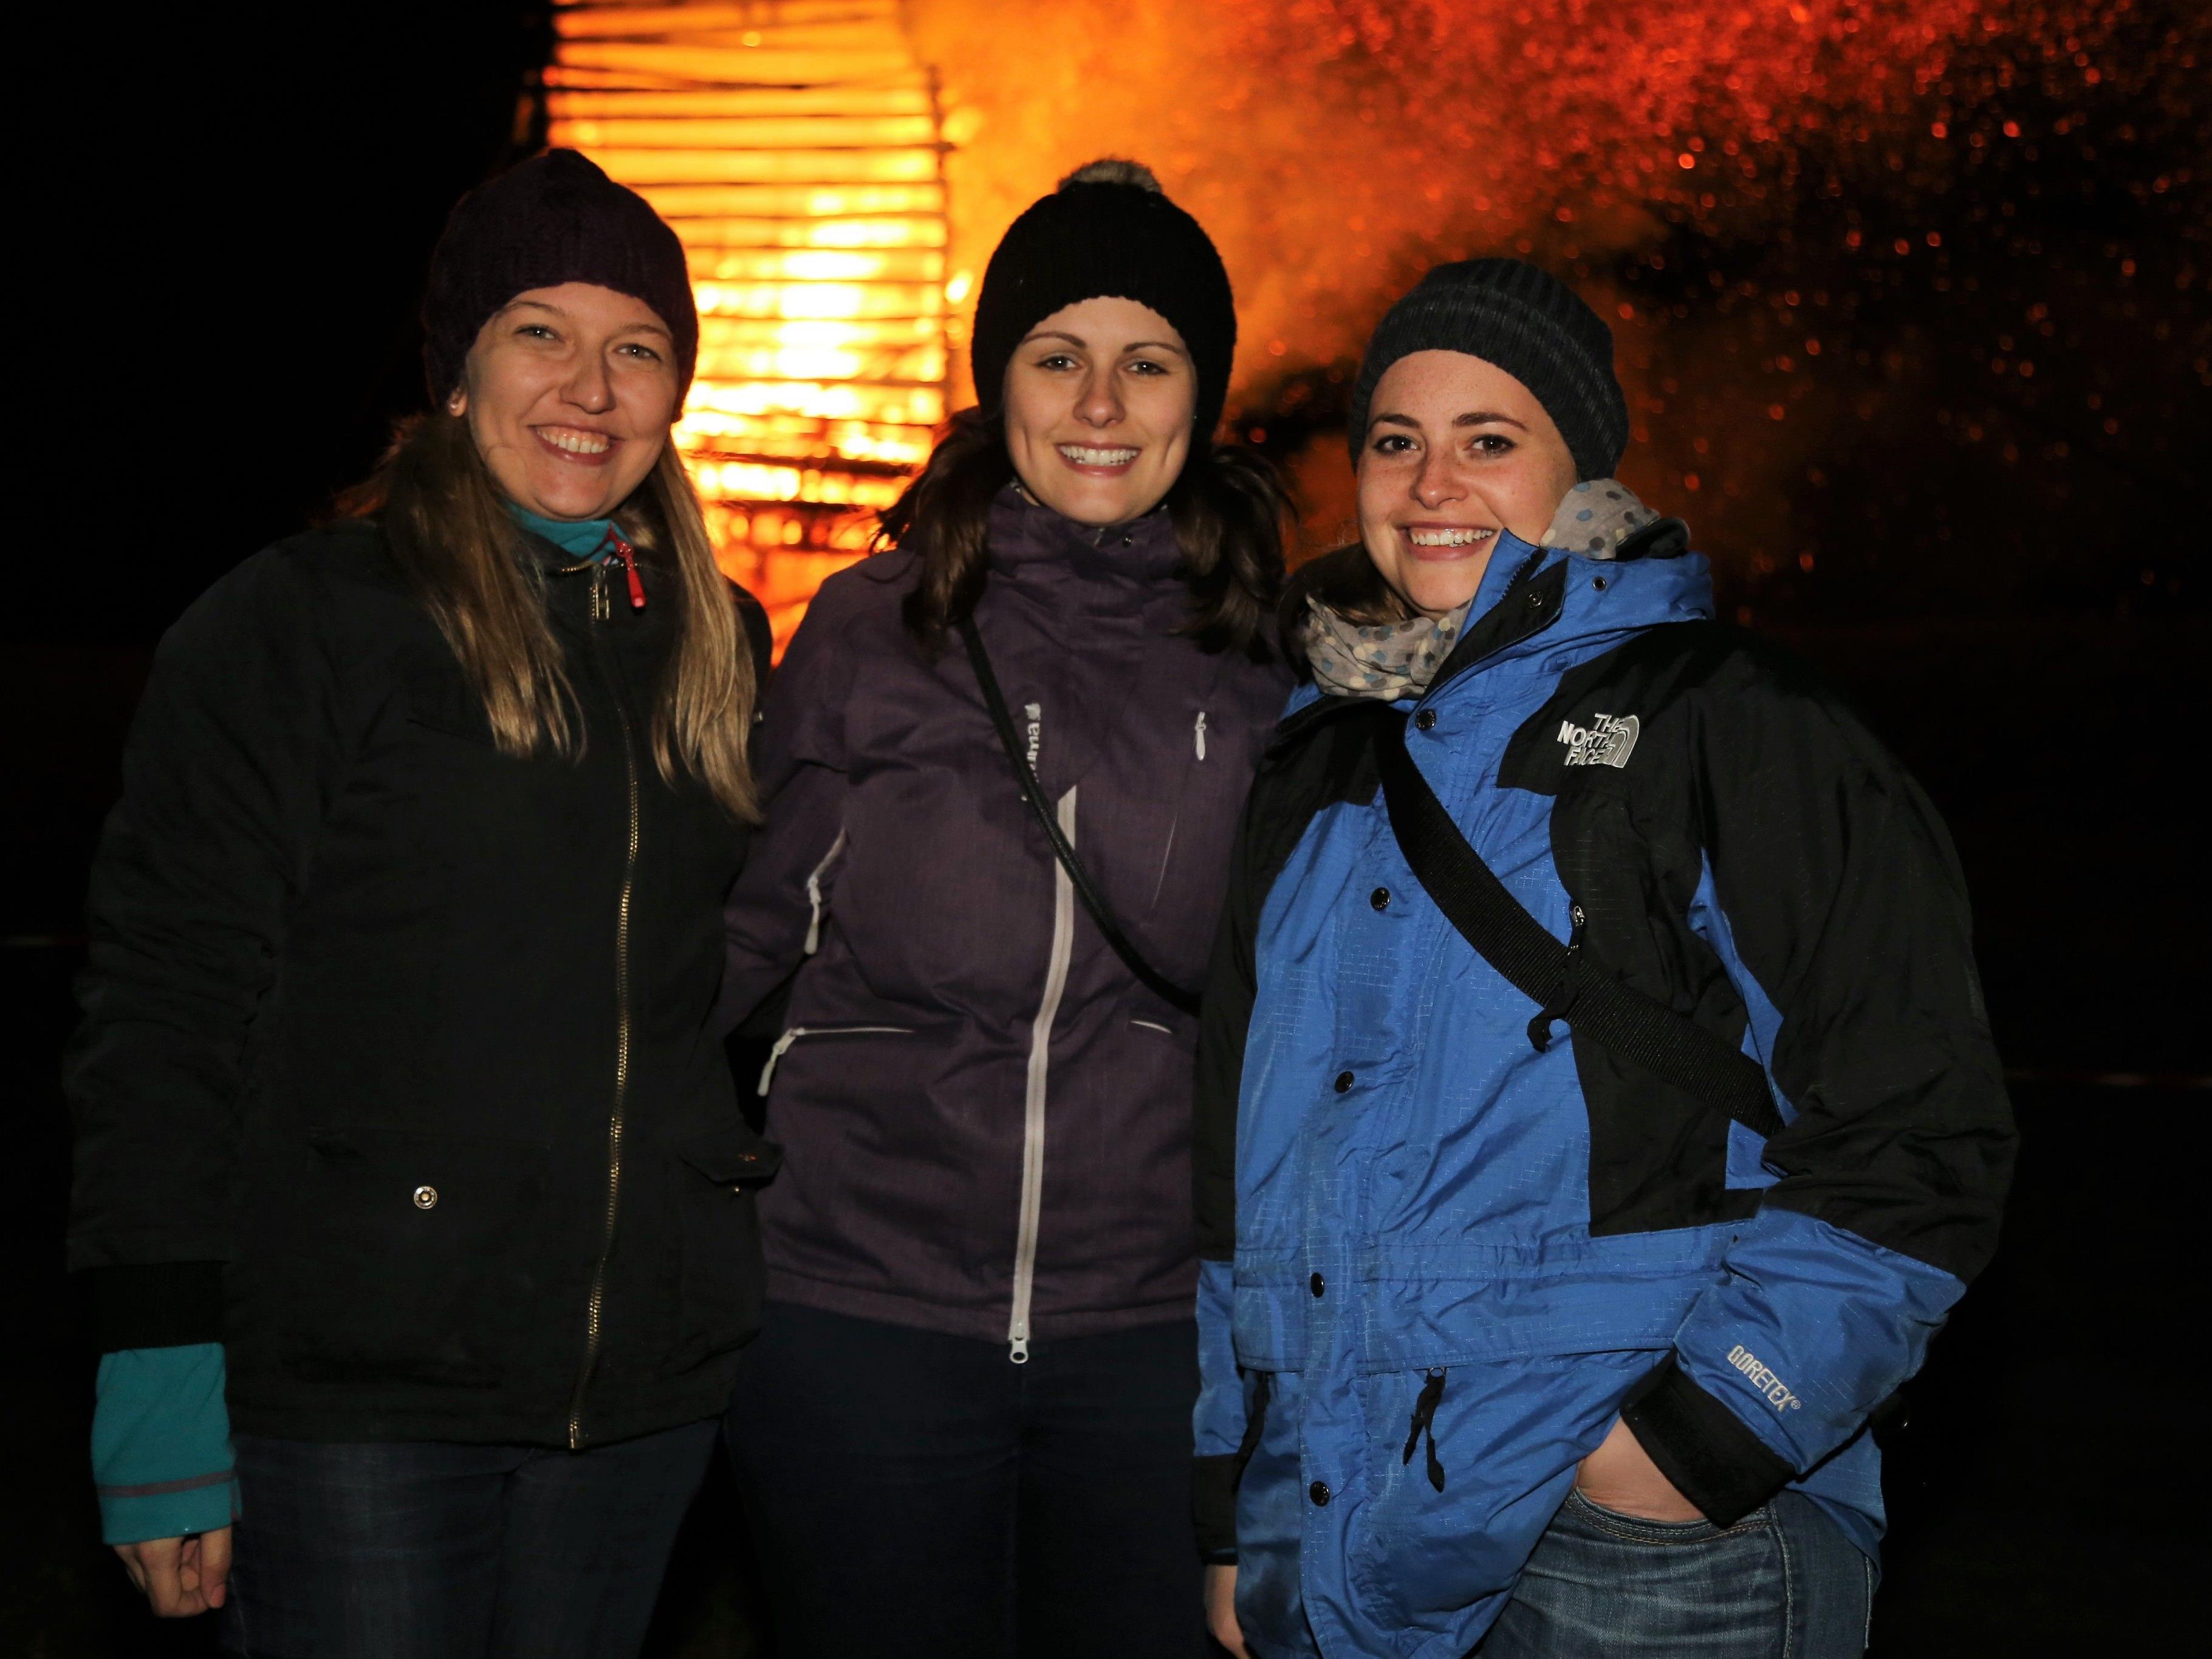 Lisa, Sarah und Bernadett genossen das Feuerspektakel am Funkensamstag in Göfis.